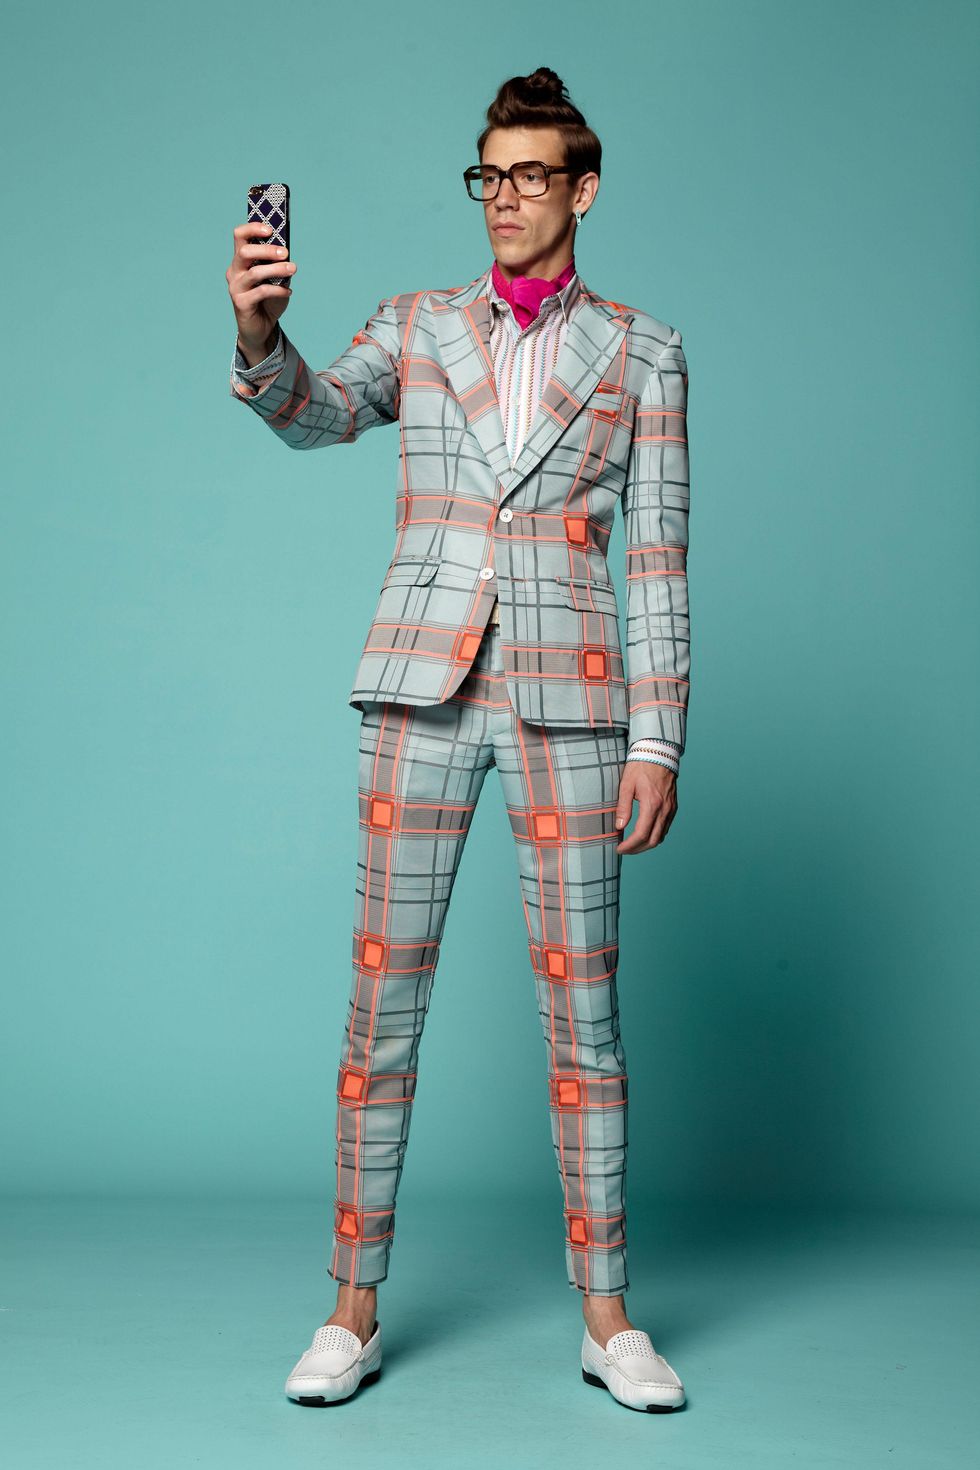 Fashion Week spring 2015 Trina Turk men's suit